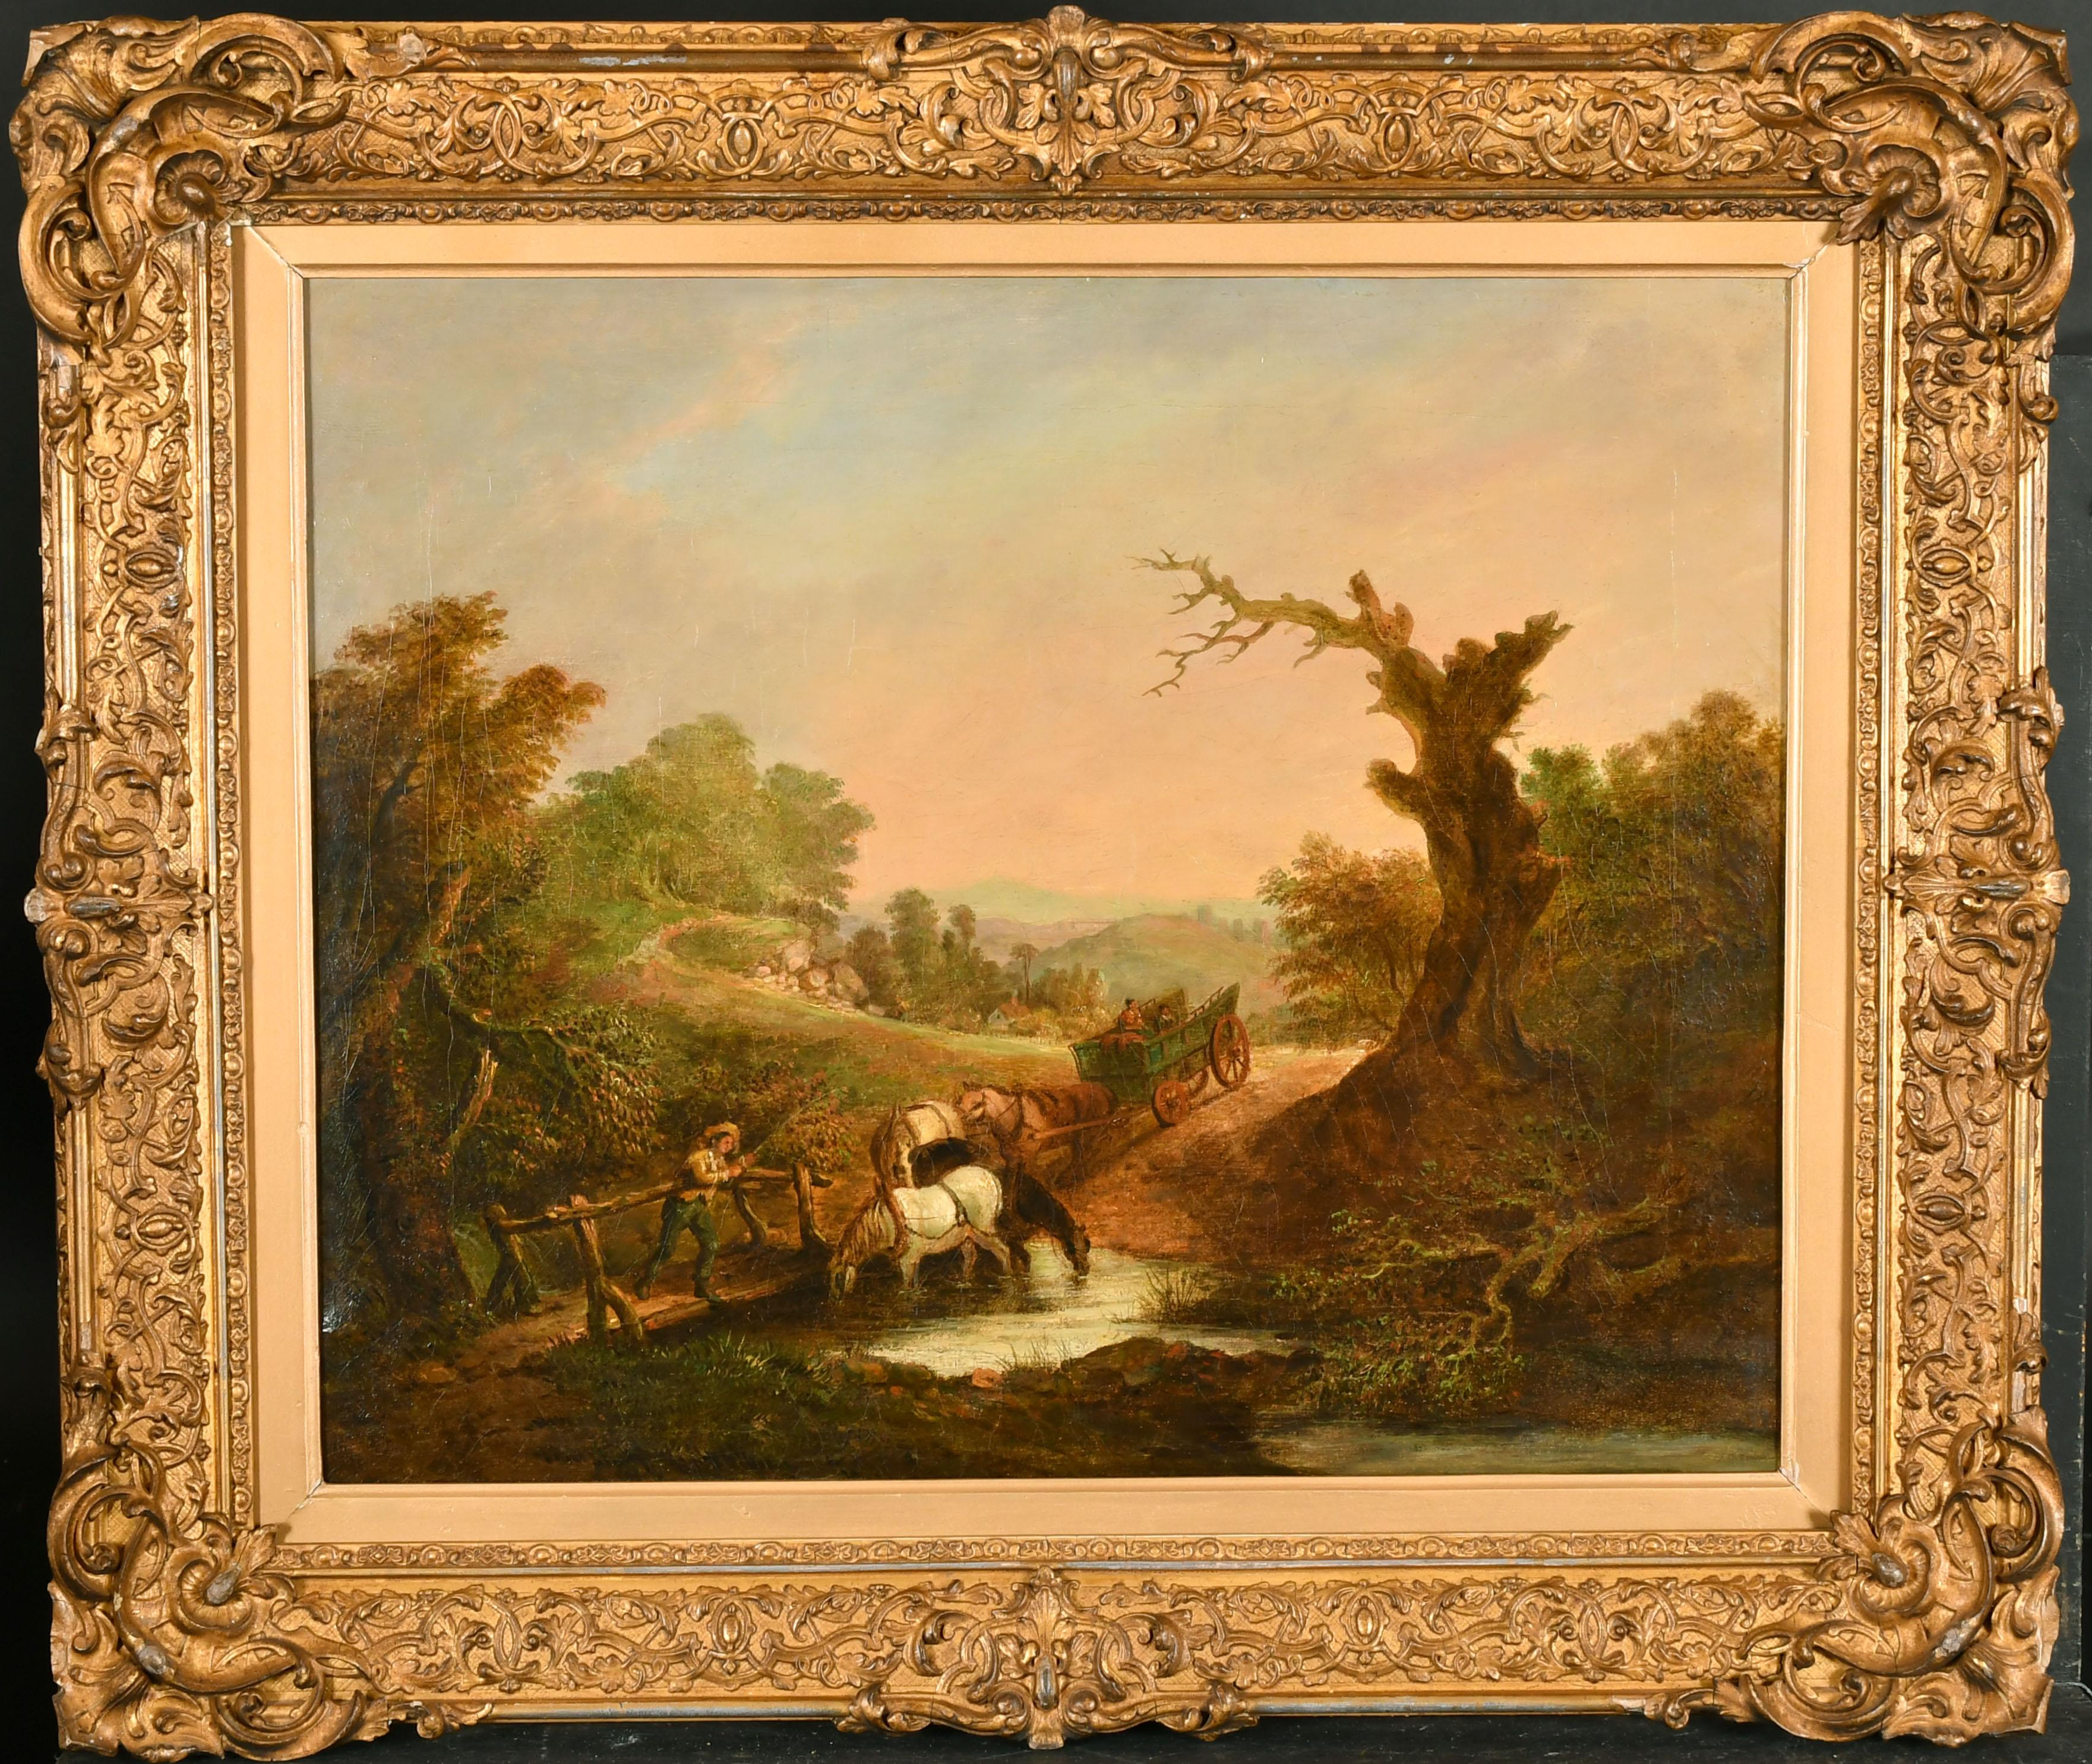 1800’s British Oil Landscape Painting – Frühes englisches romantisches Ölgemälde Bauern mit Pferd undwagen beim Überqueren des Flusses